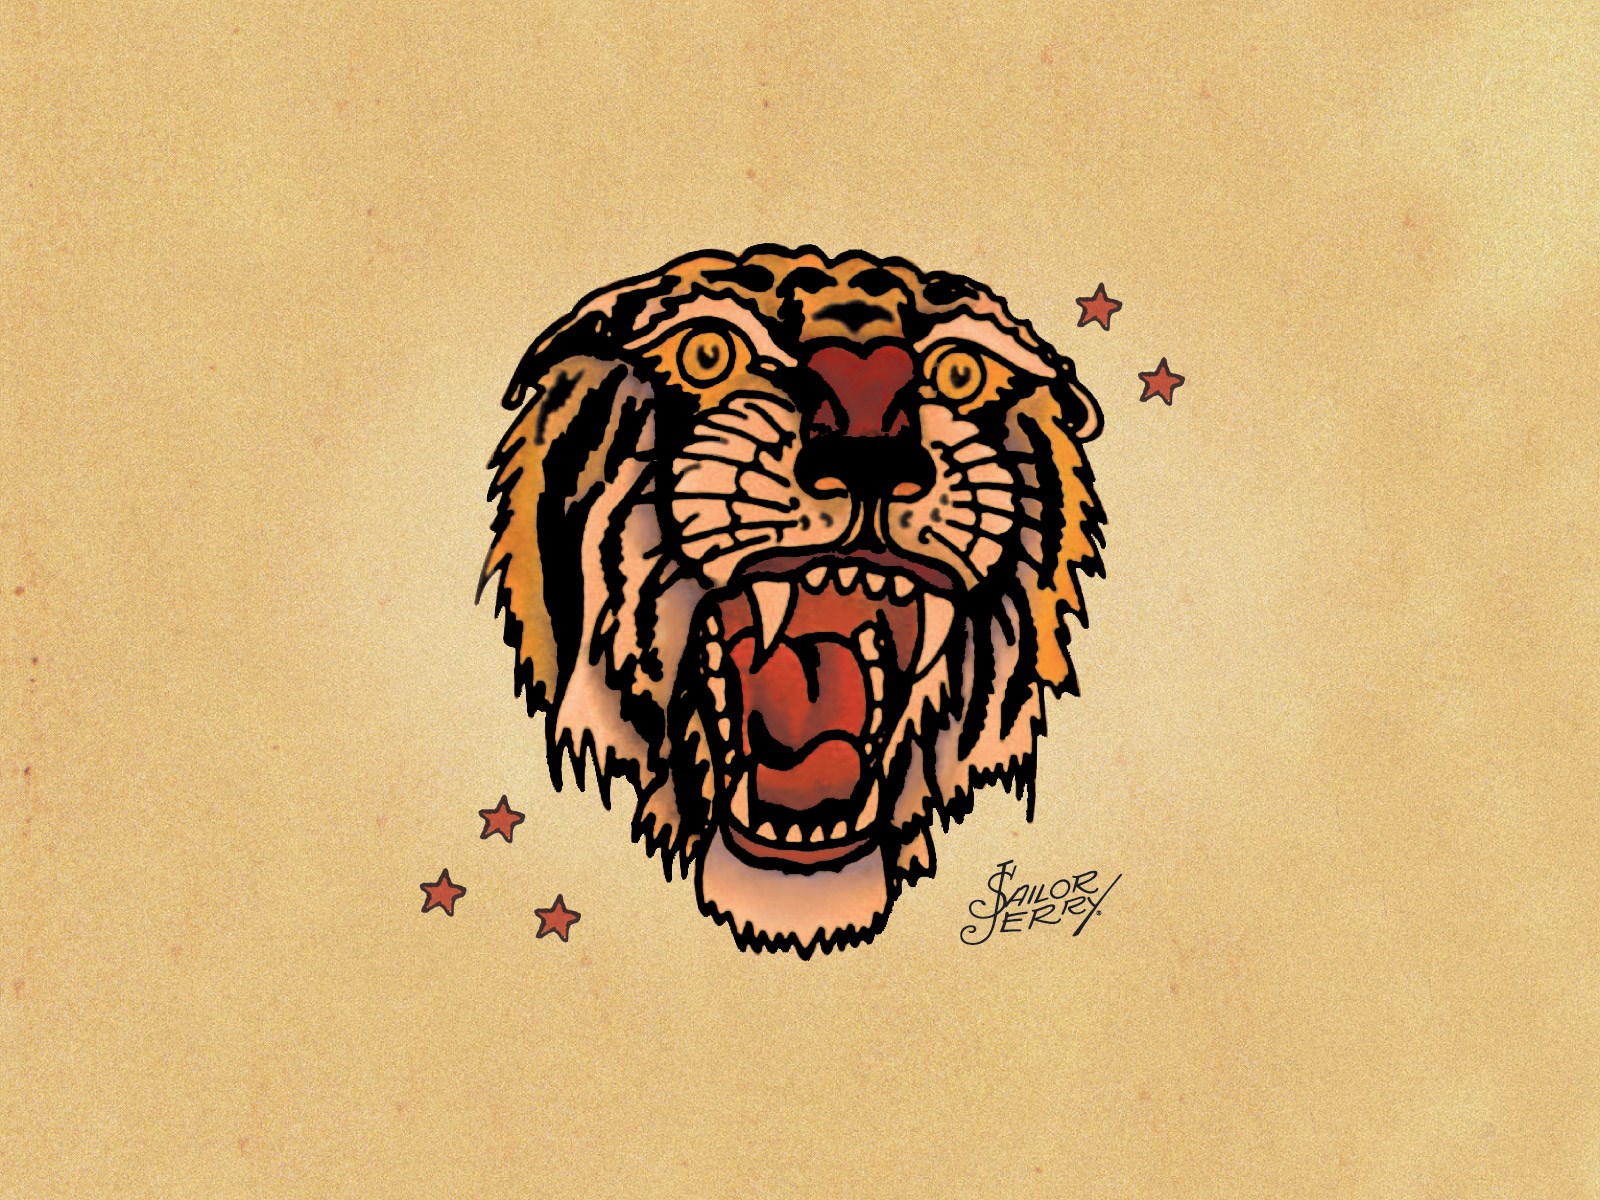 Sailor Jerry Tiger Head Tattoo